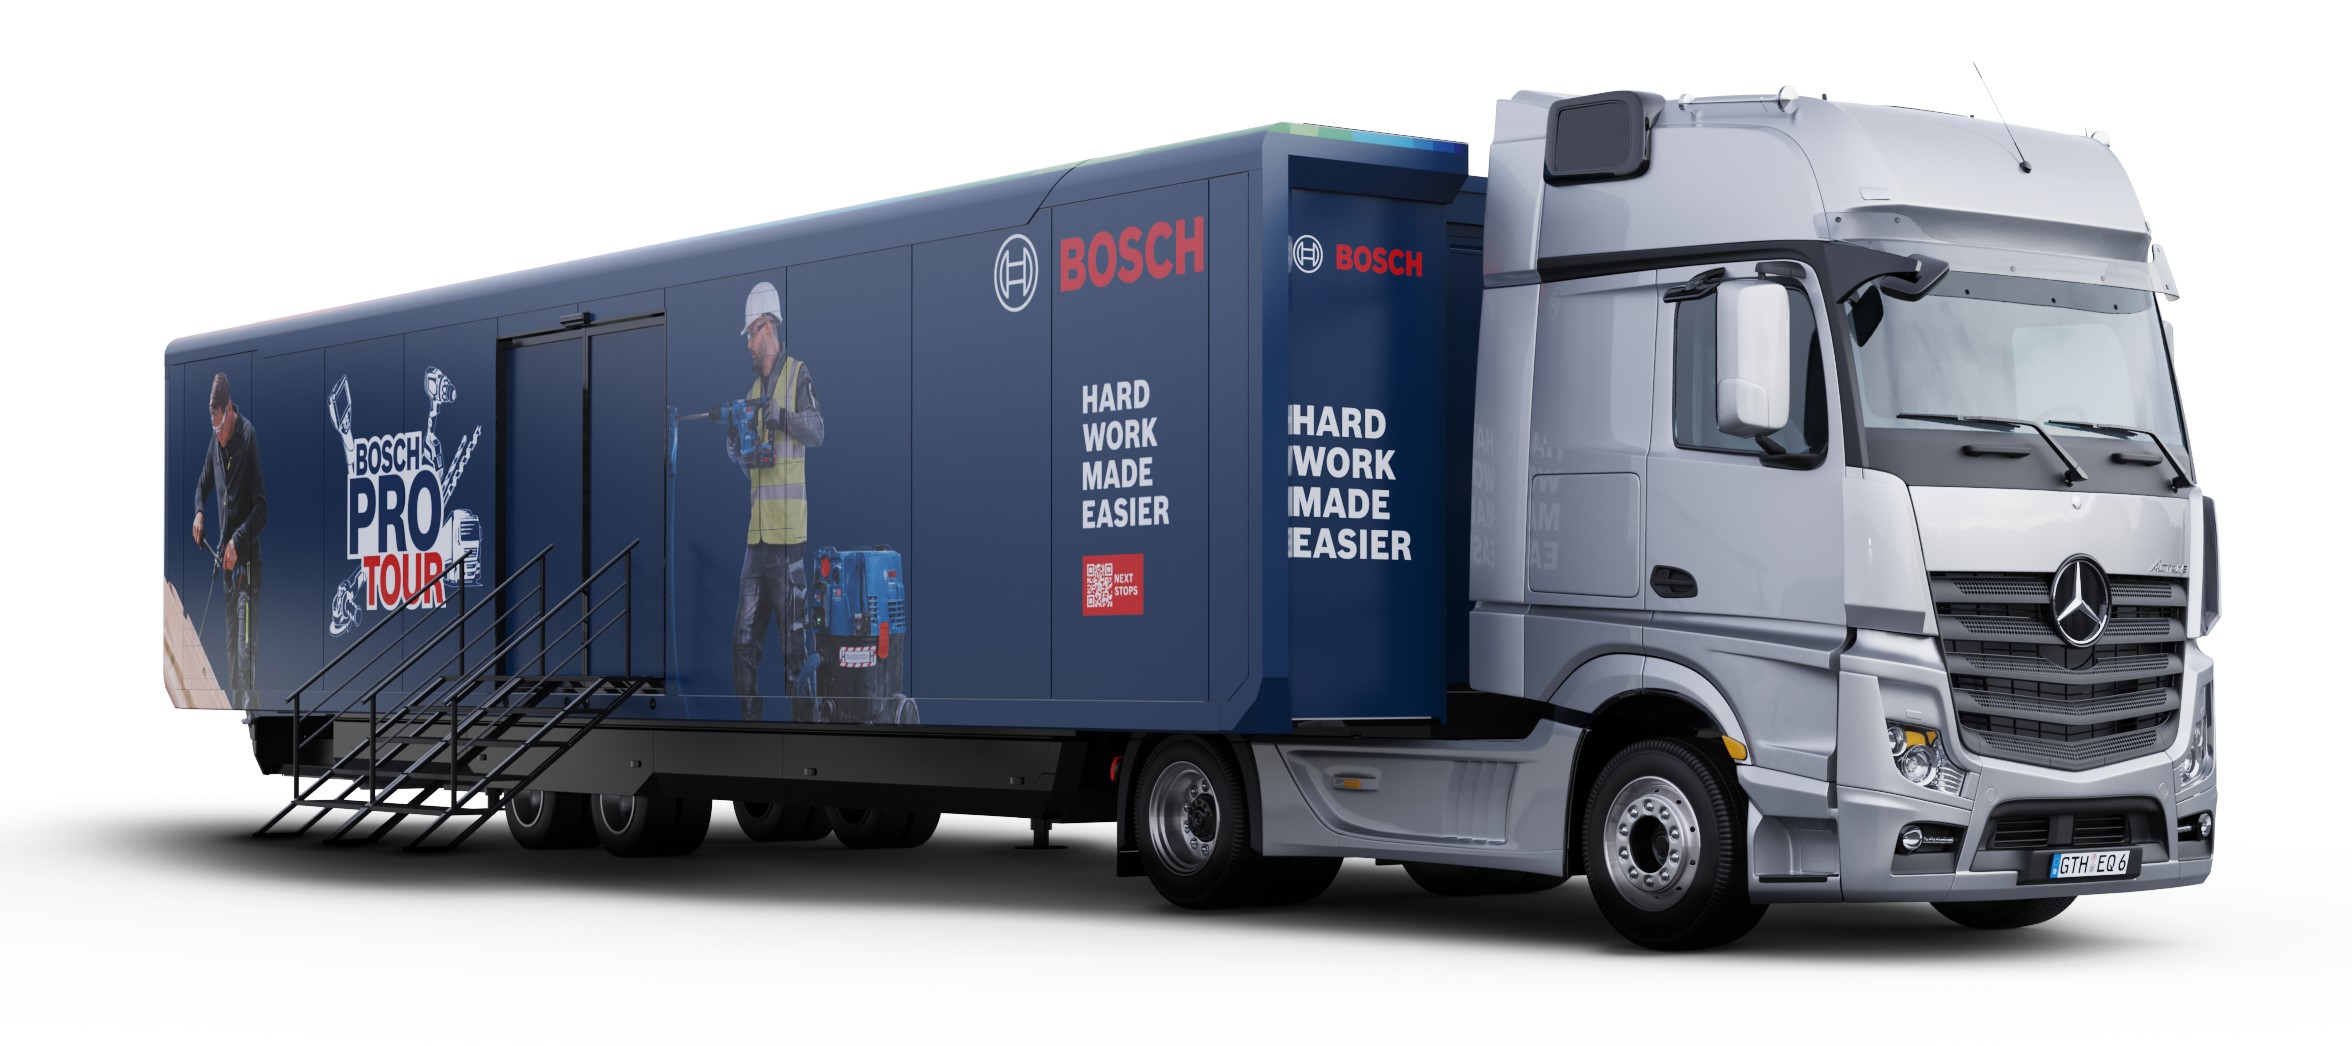 Die Bosch Pro Tour Europa macht bis Ende des Jahres an über 50 Orten Station, darunter Messen und Hausmessen sowie Firmengelände